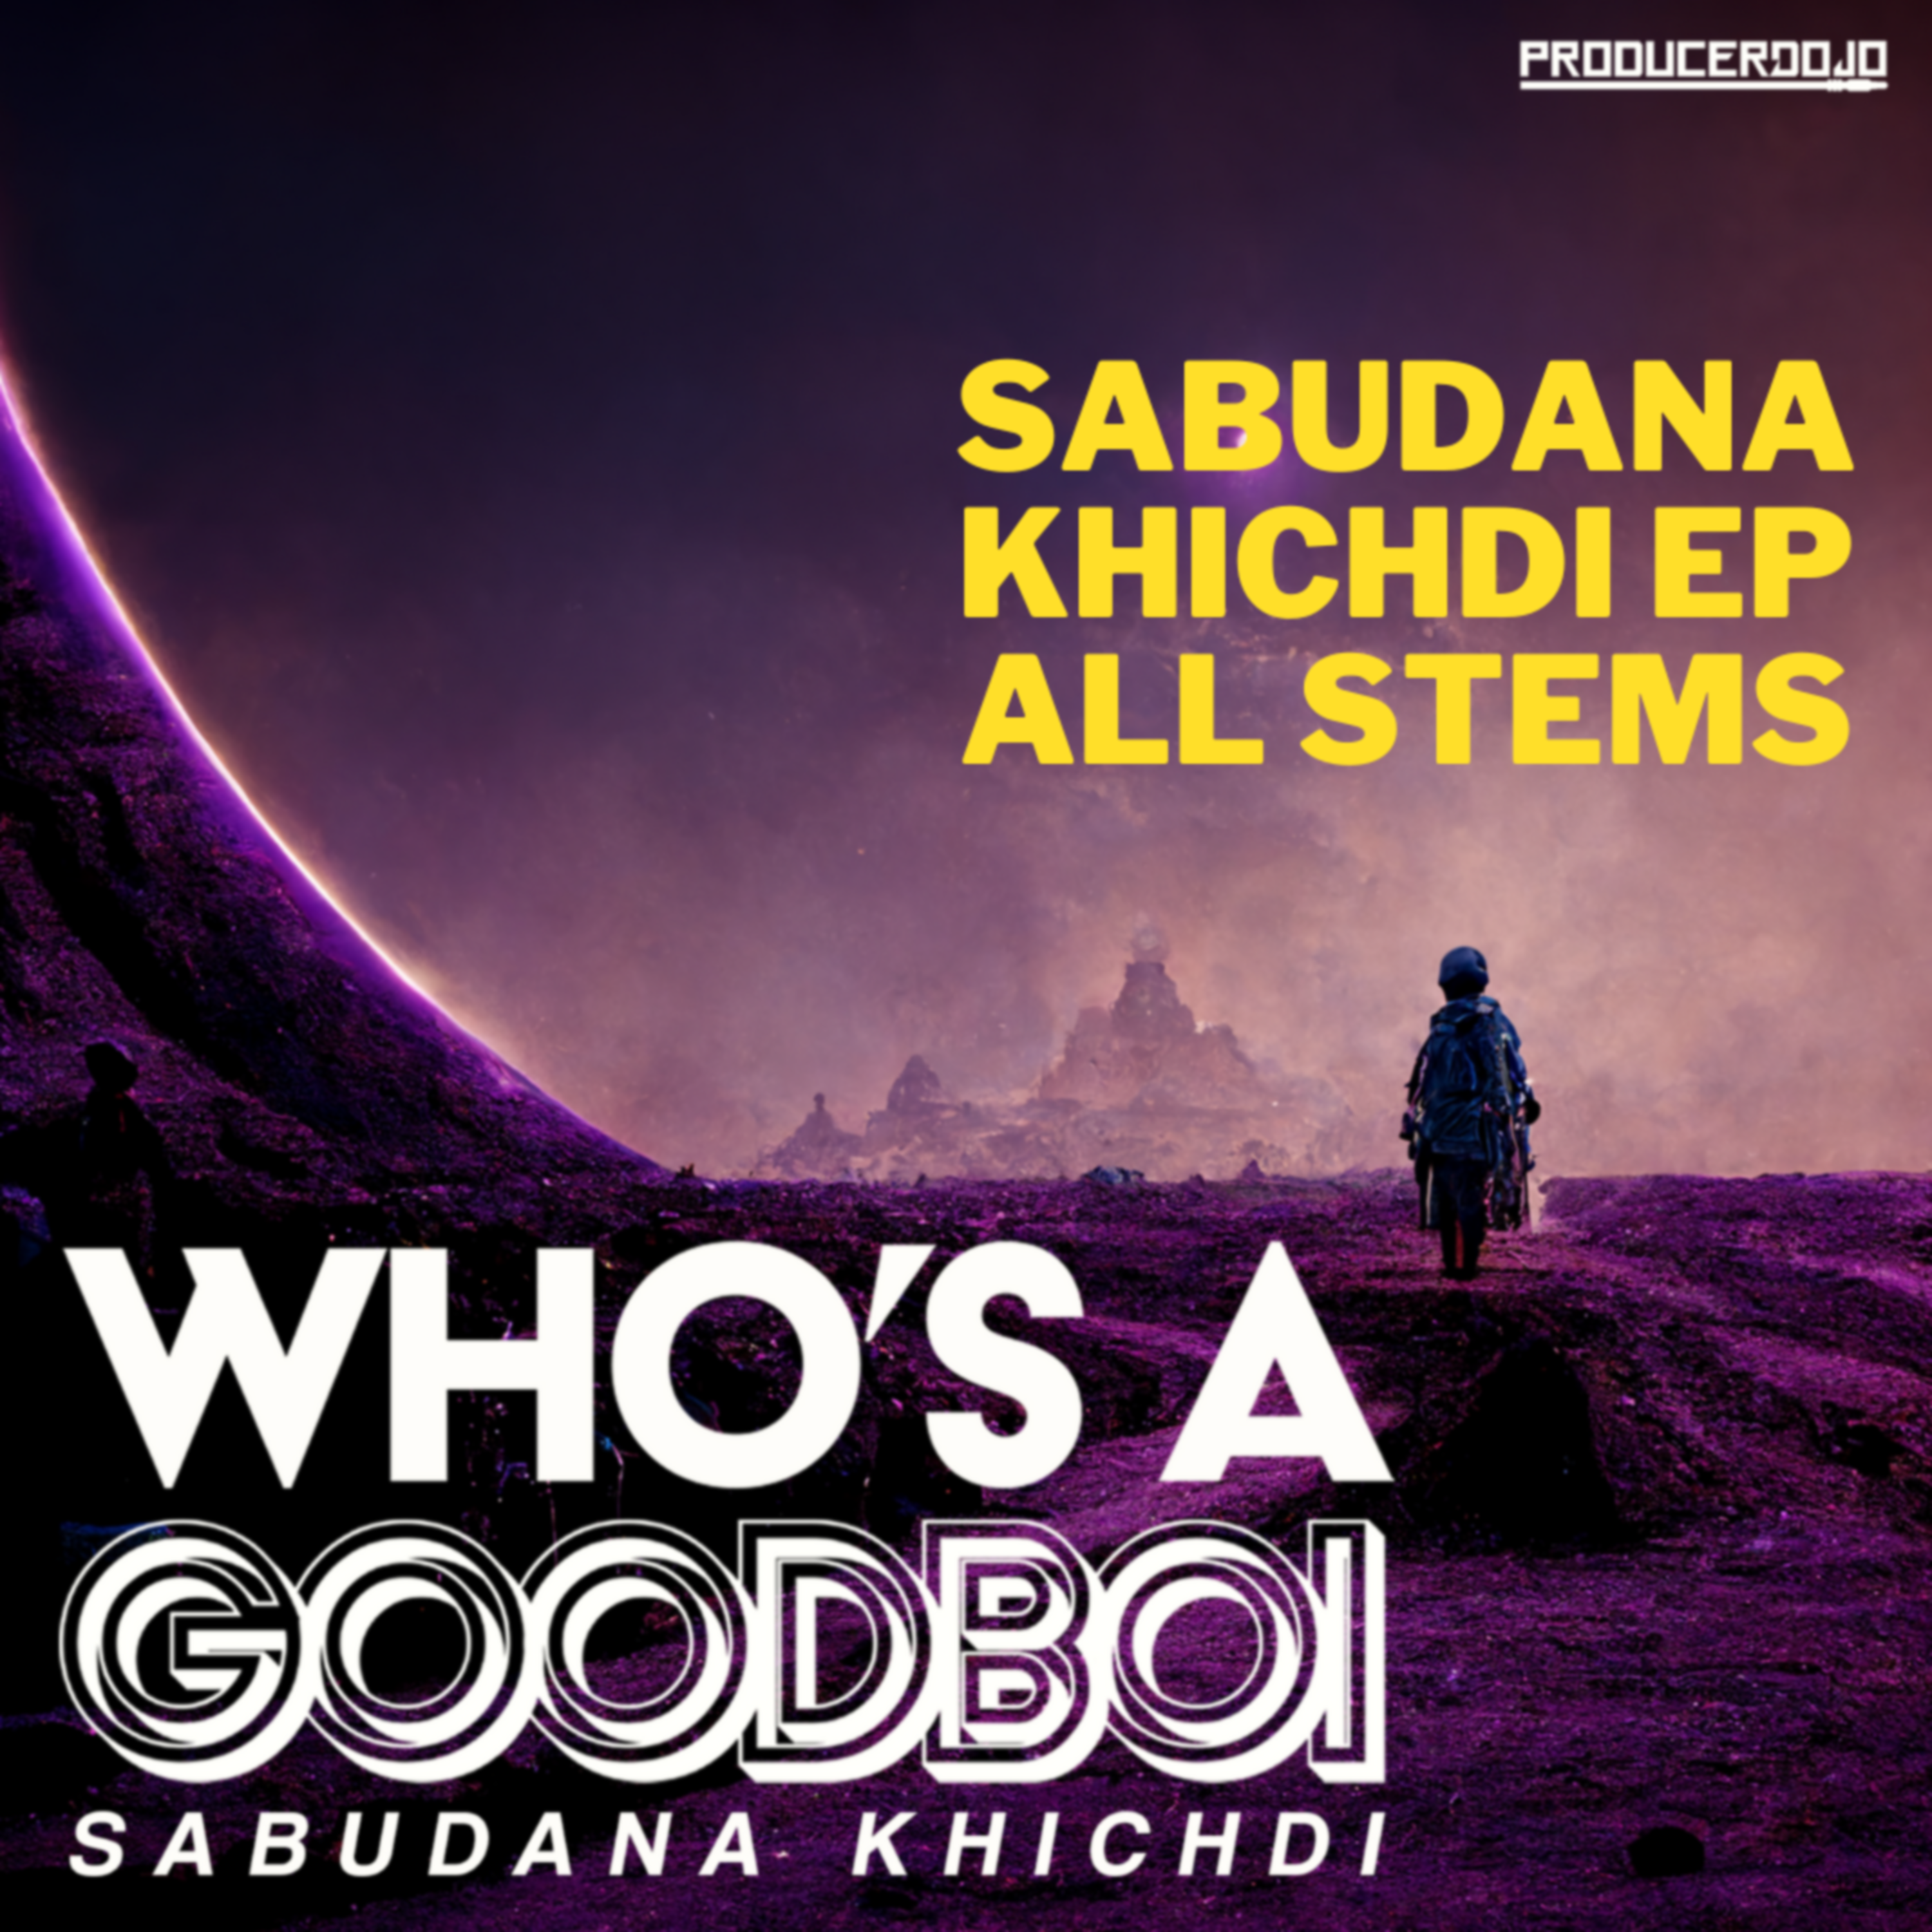 Sabudana Khichdi EP - All Stems